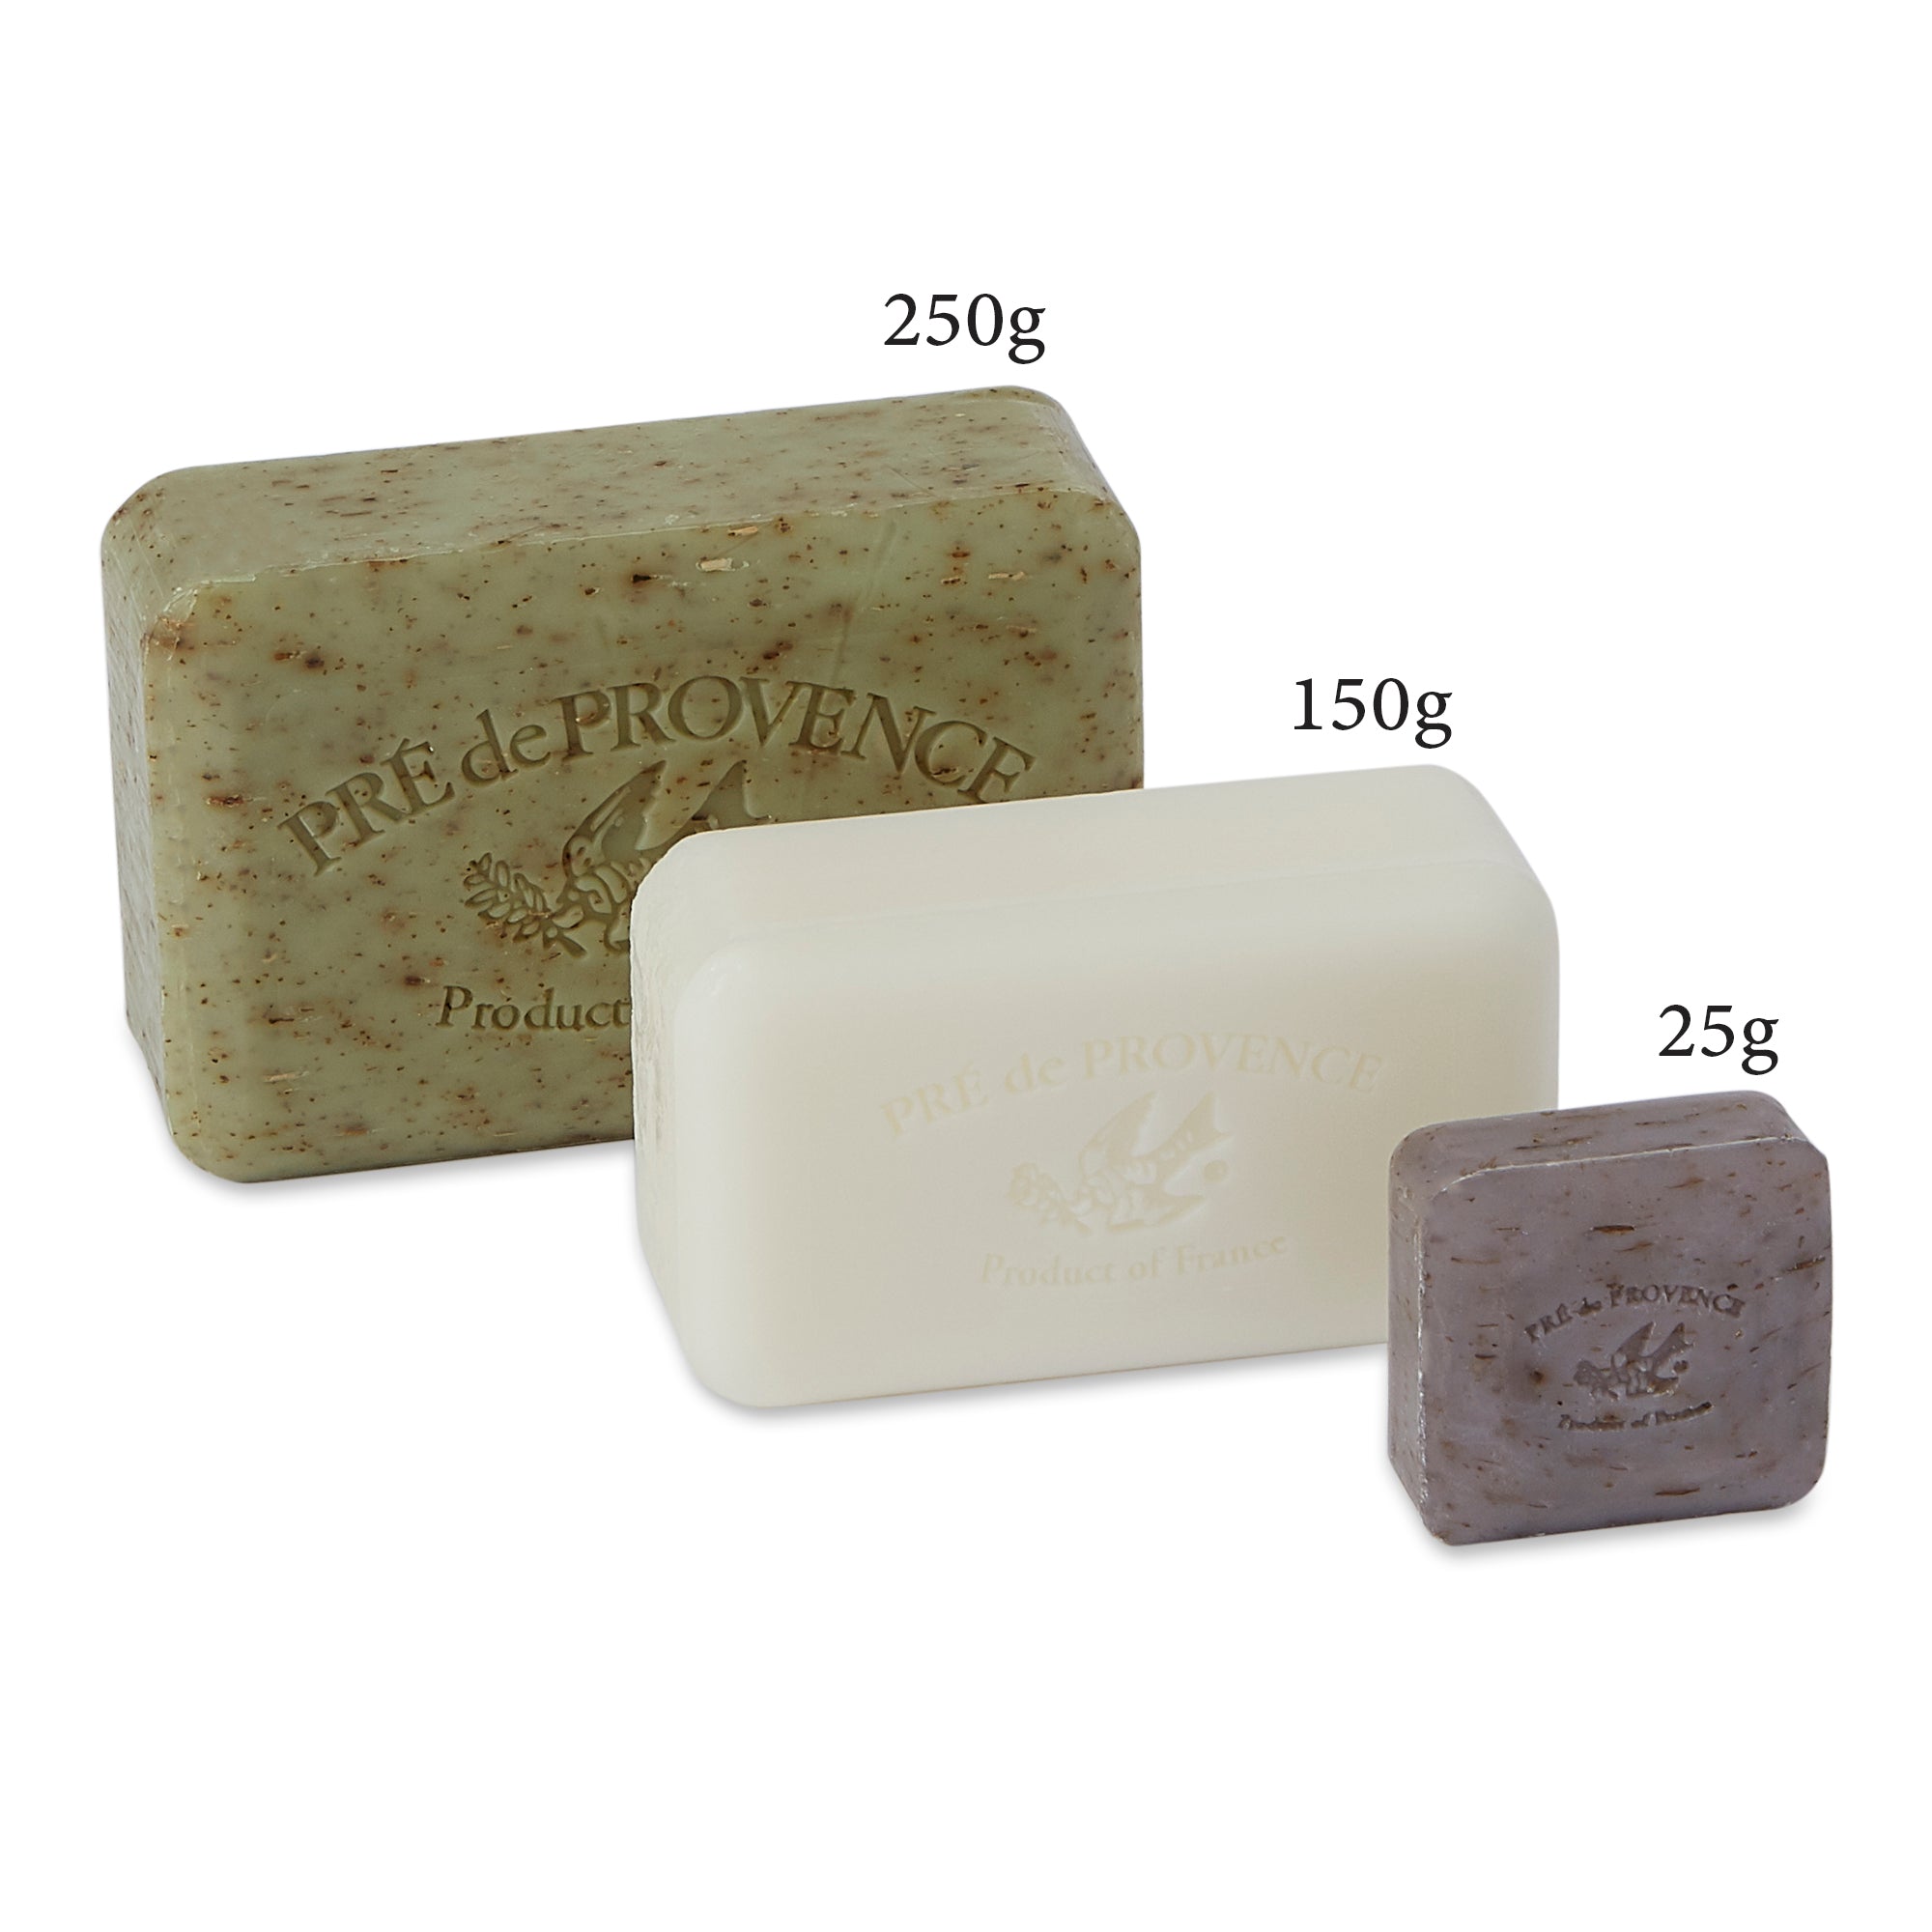 Pre De Provence Soap, Coconut - 250 g